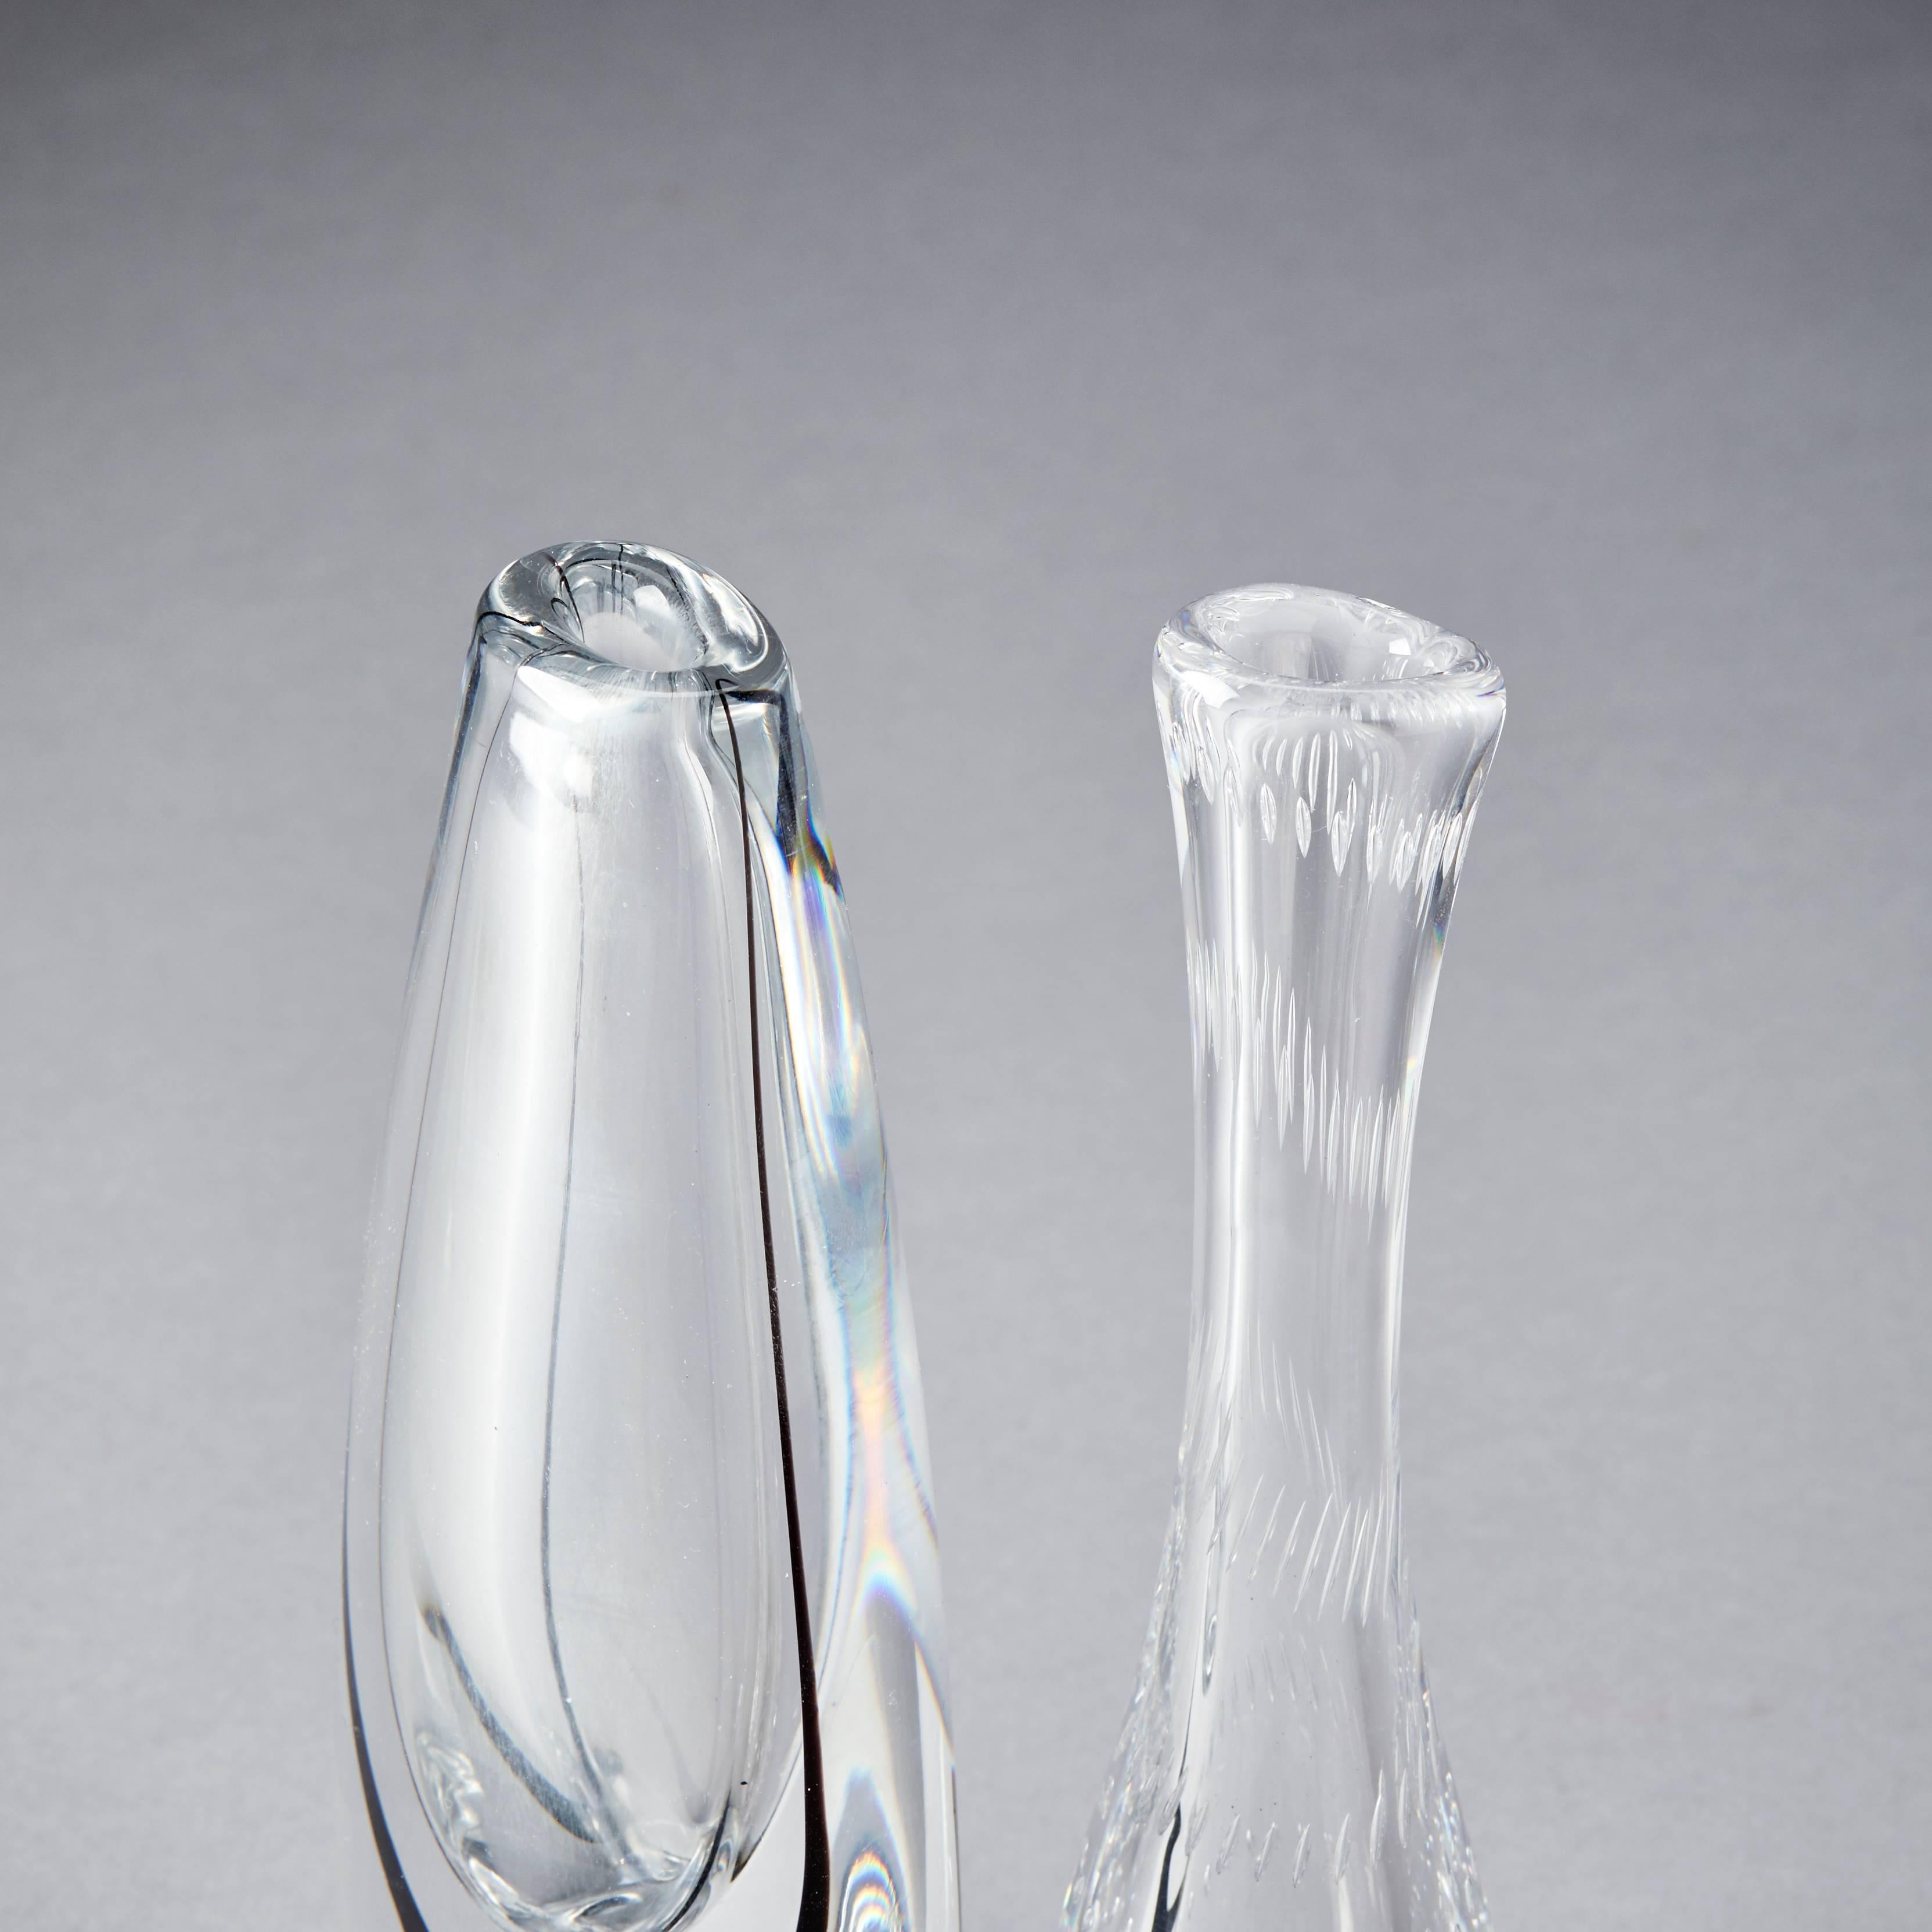 Vicke Lindstrand 1904-1983 vases, two pieces. Signed Kosta LH 1414, Kosta 4133 Lindstrand. Glass, measure: H 23-23.5 cm.